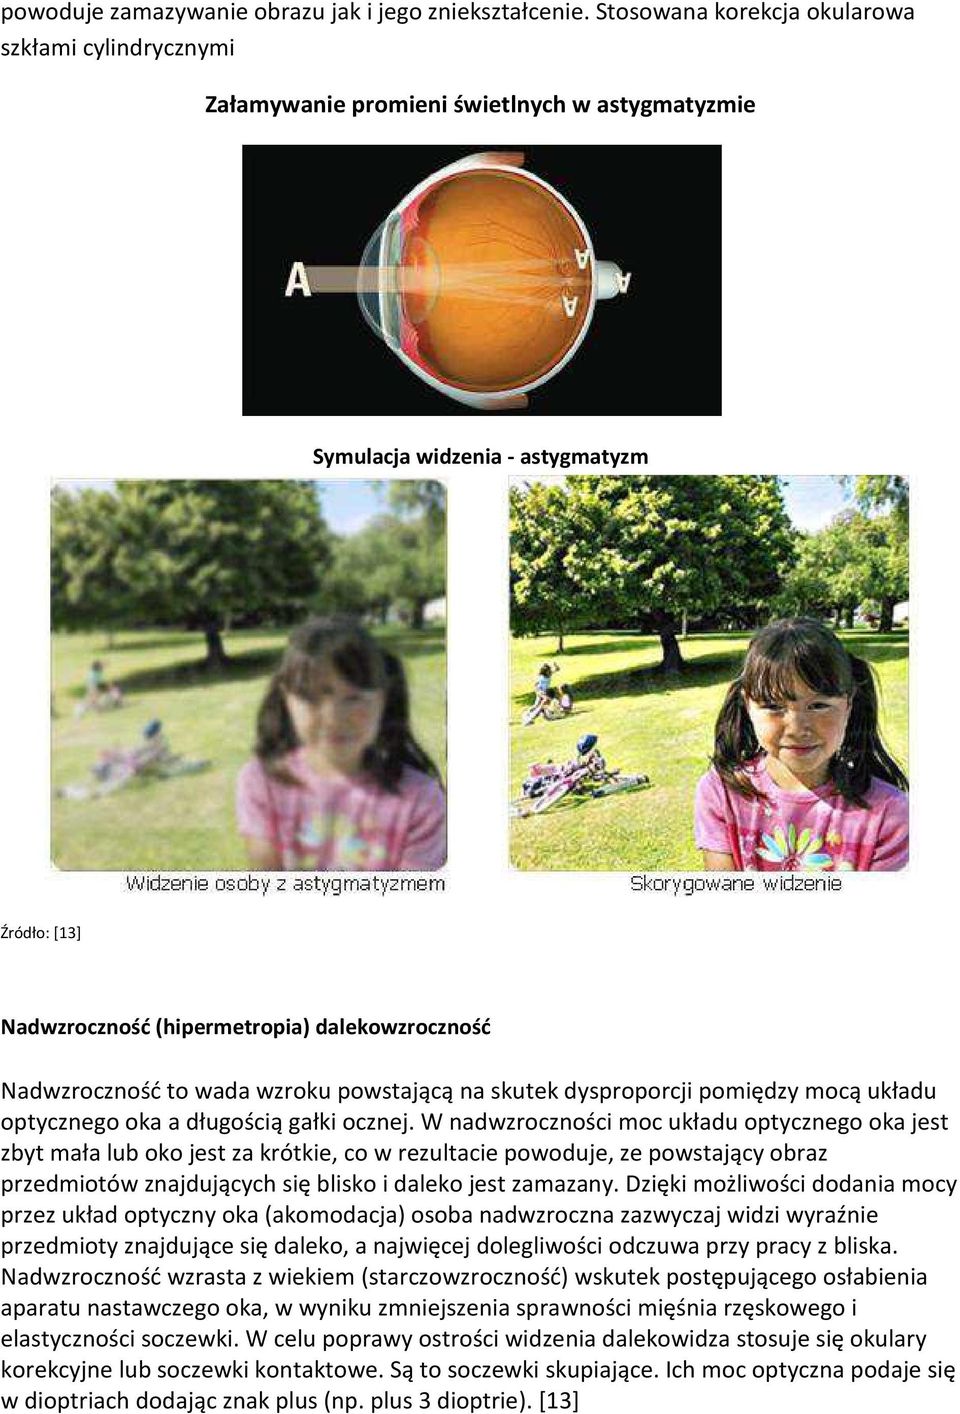 Nadwzroczność to wada wzroku powstającą na skutek dysproporcji pomiędzy mocą układu optycznego oka a długością gałki ocznej.